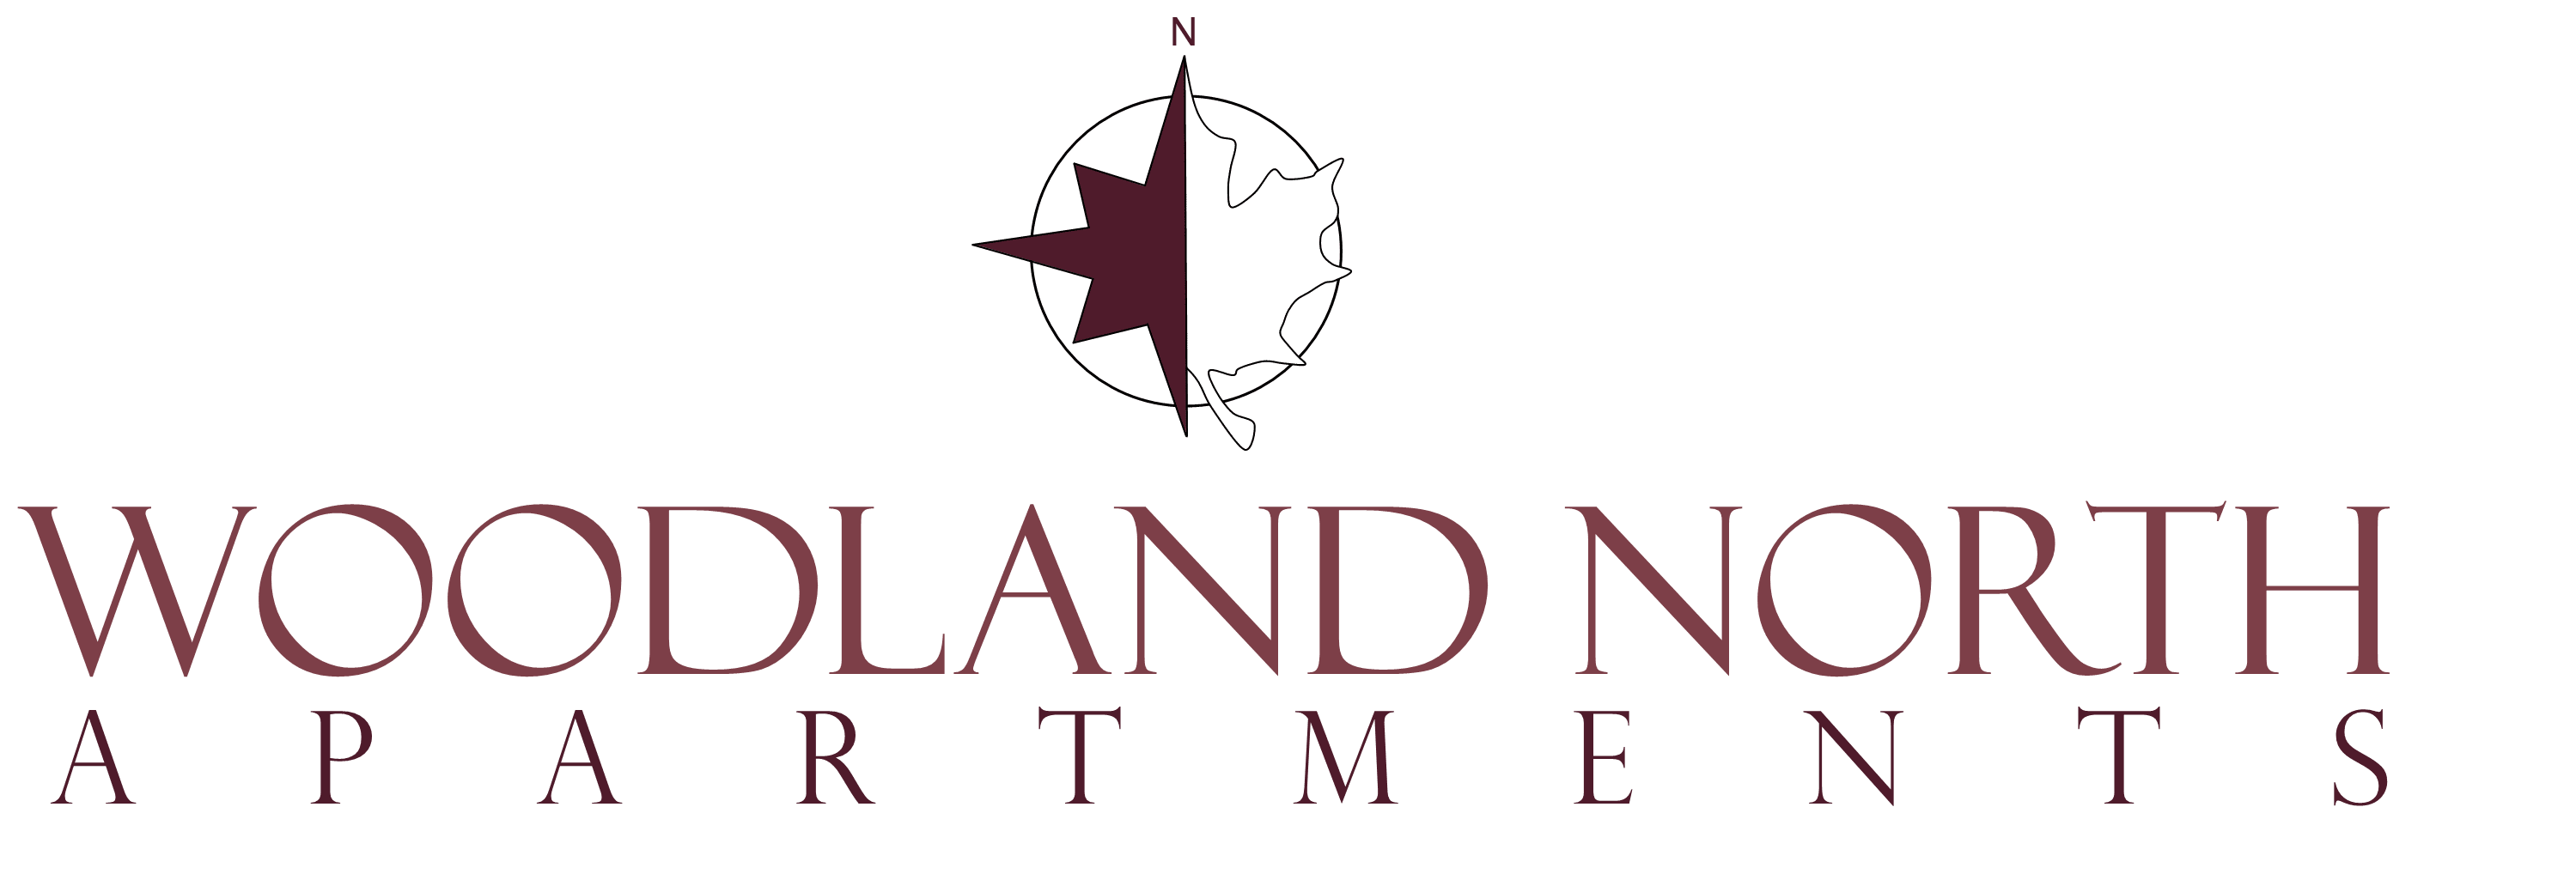 logo - Woodlands Market